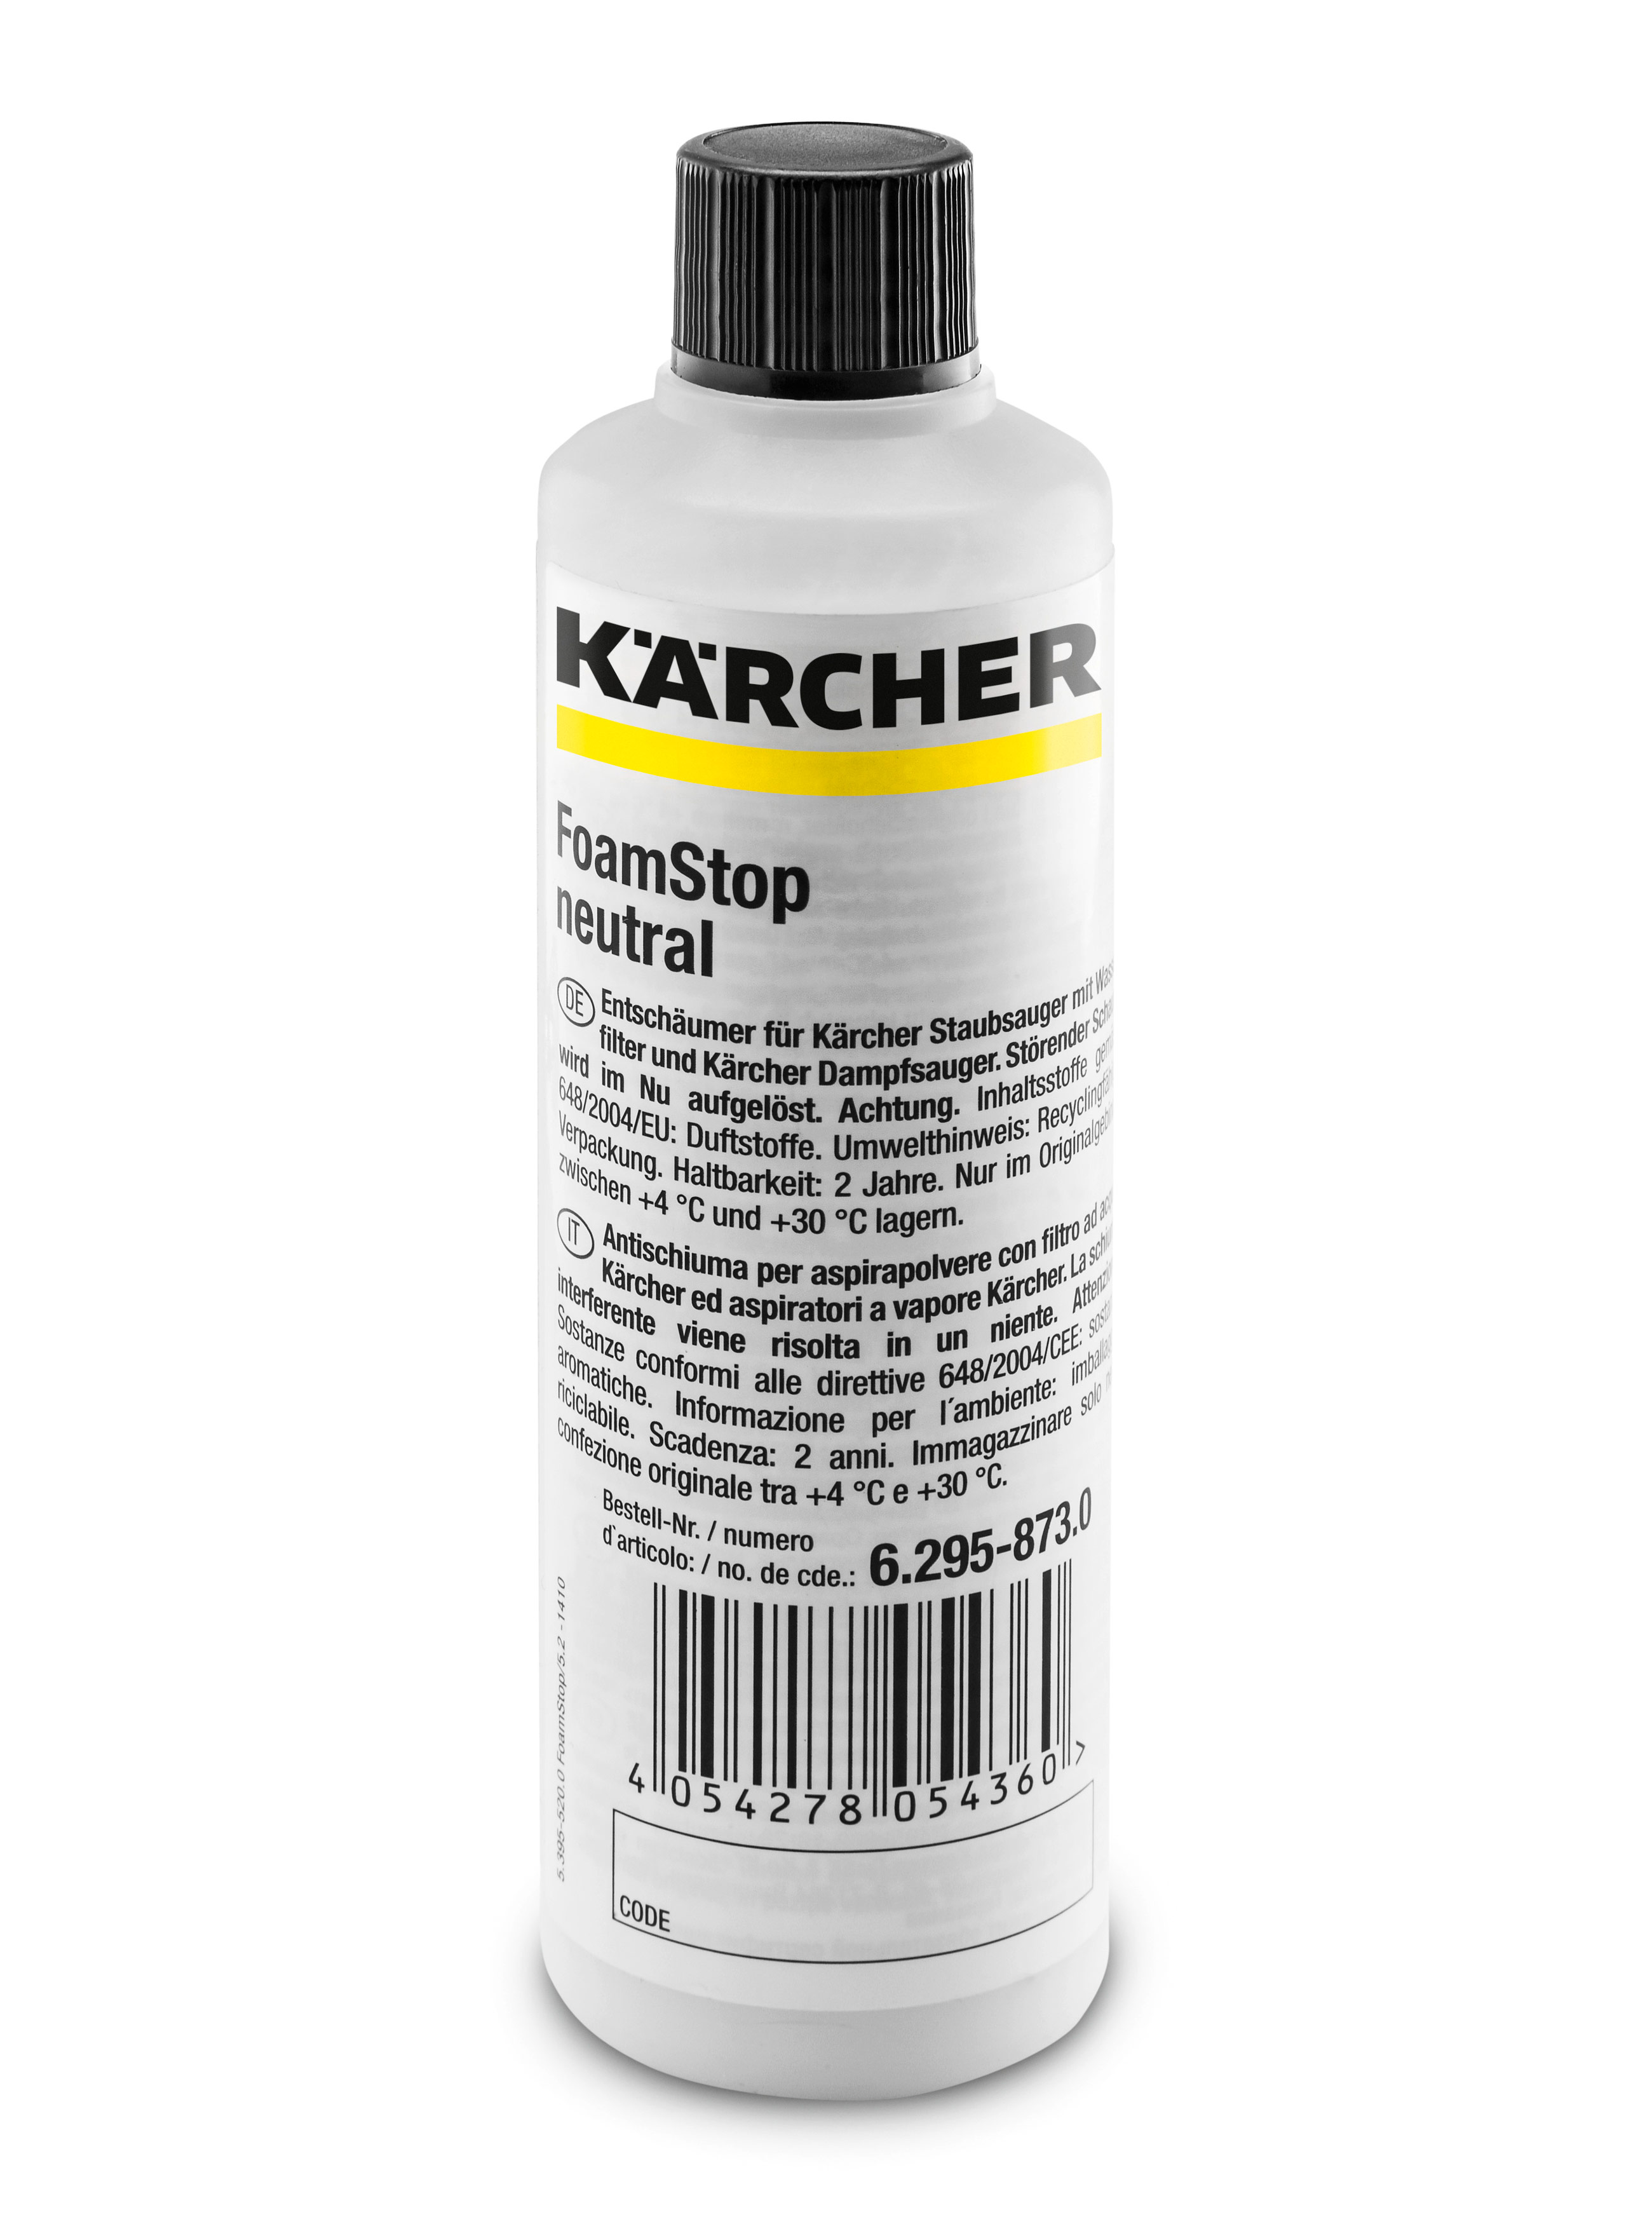 Пеногаситель Karcher 6.295-873.0 Foam Stop Neutral пеногаситель для пылесосов karcher foamstop neutral 125 мл